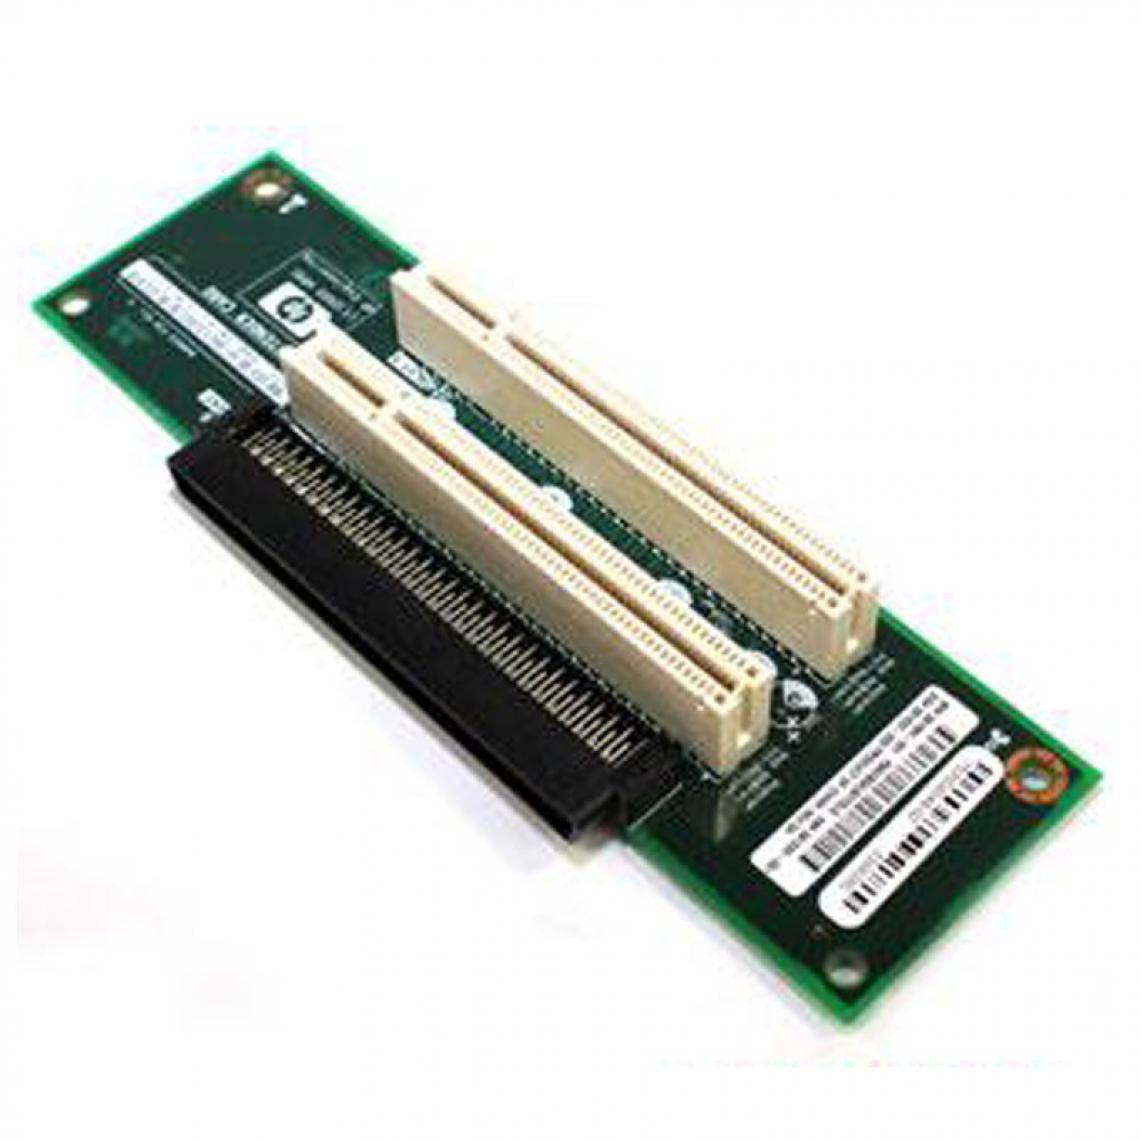 Hp - Carte PCI HP DC7600 391084-001 Riser Card 2xPCI 391031-001 AS:391030-001 C6AS218 - Carte Contrôleur USB